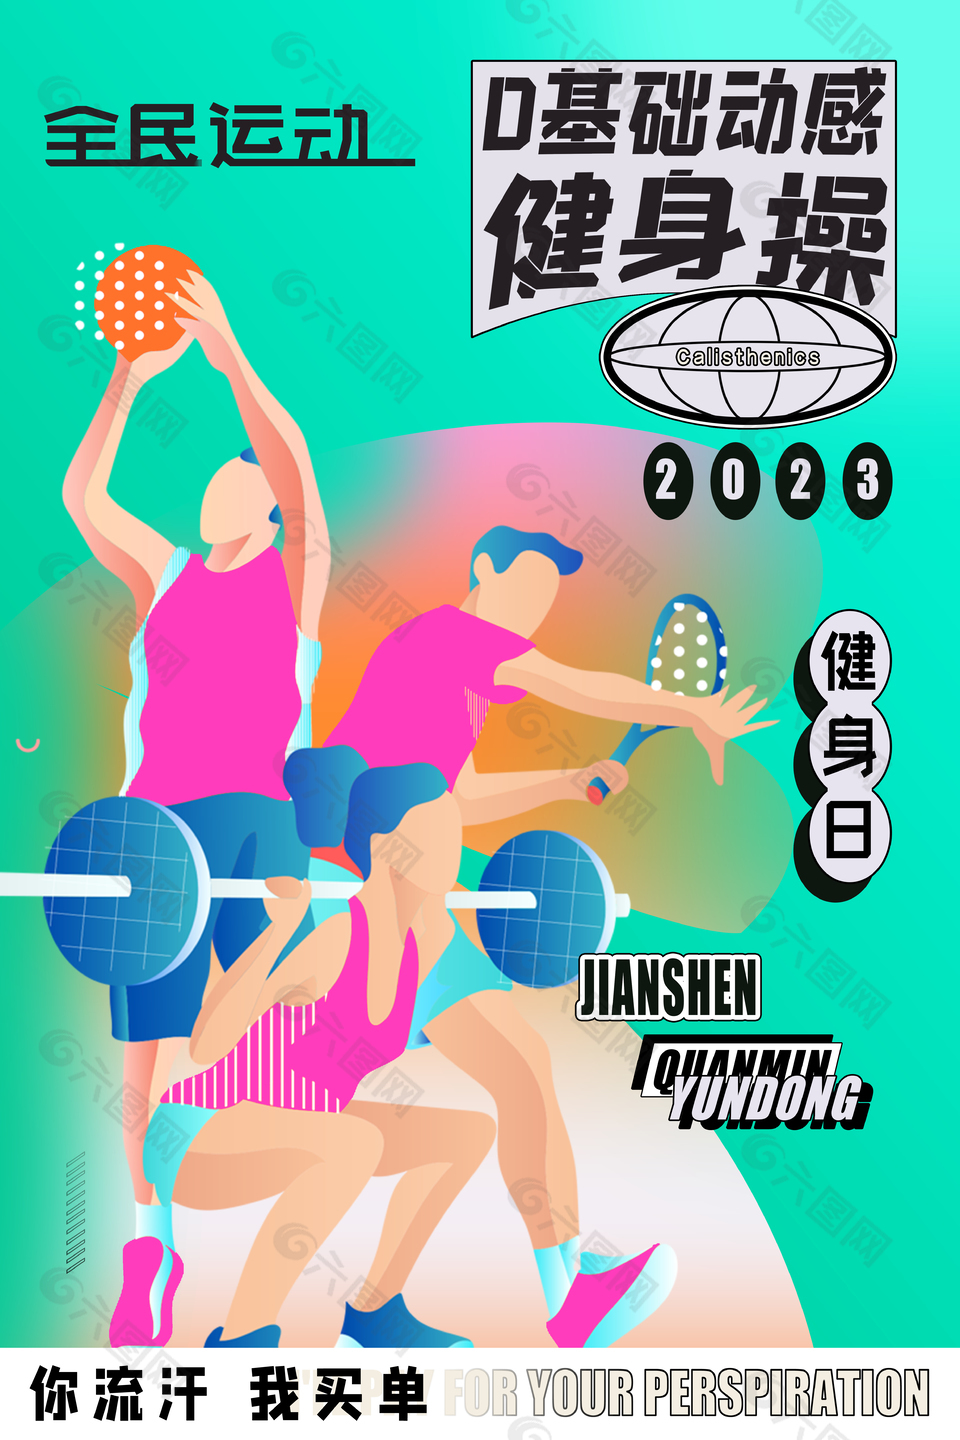 全民运动健身插画海报素材